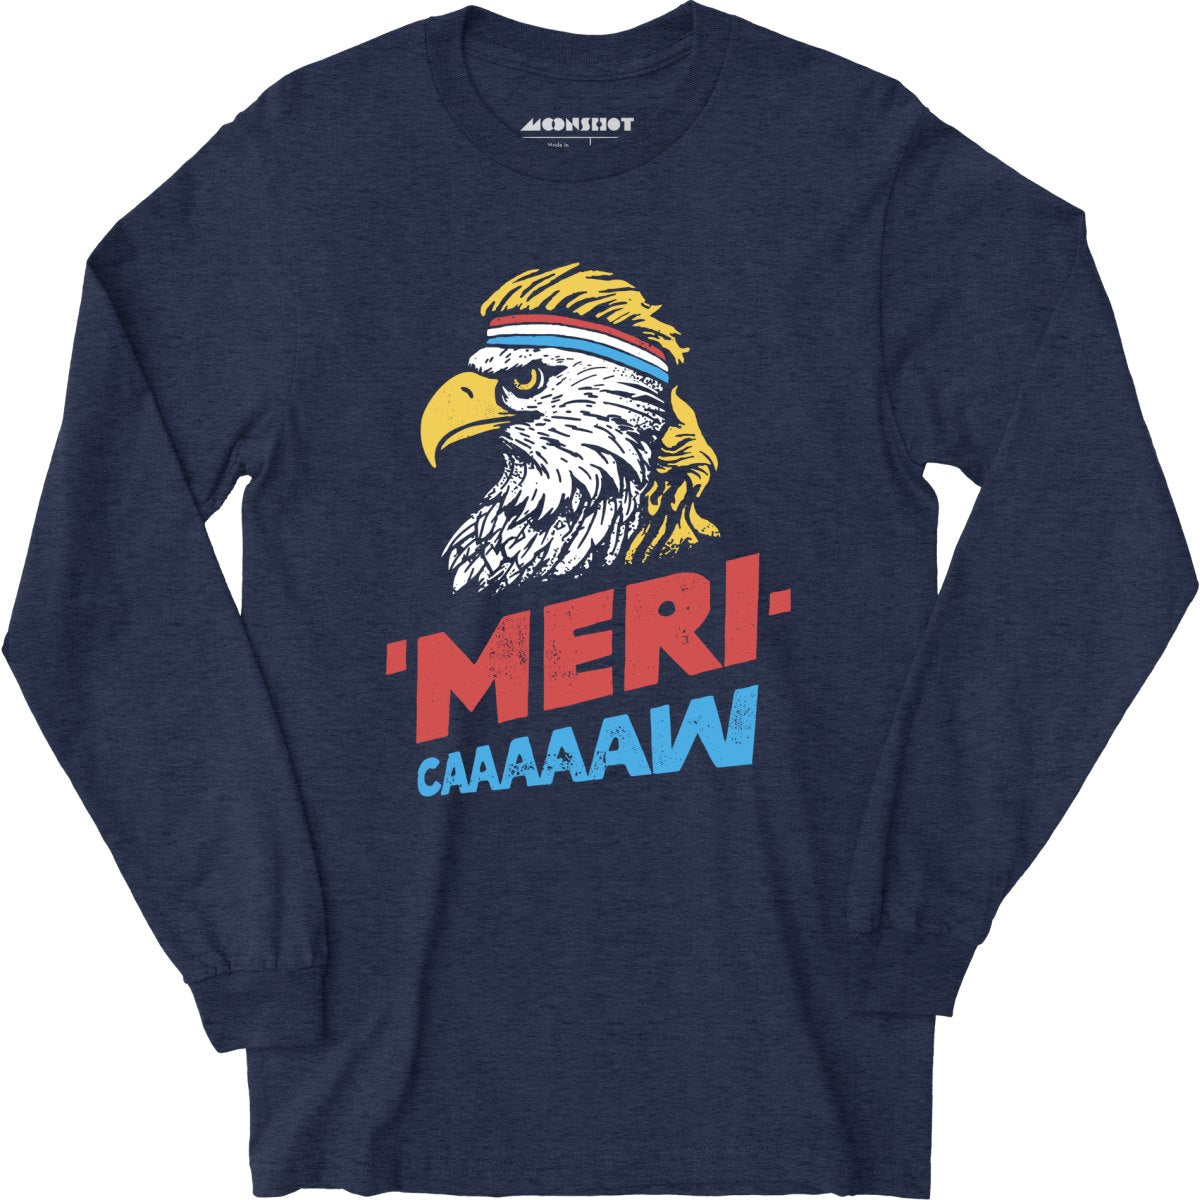 Meri-caaaaaw - Long Sleeve T-Shirt